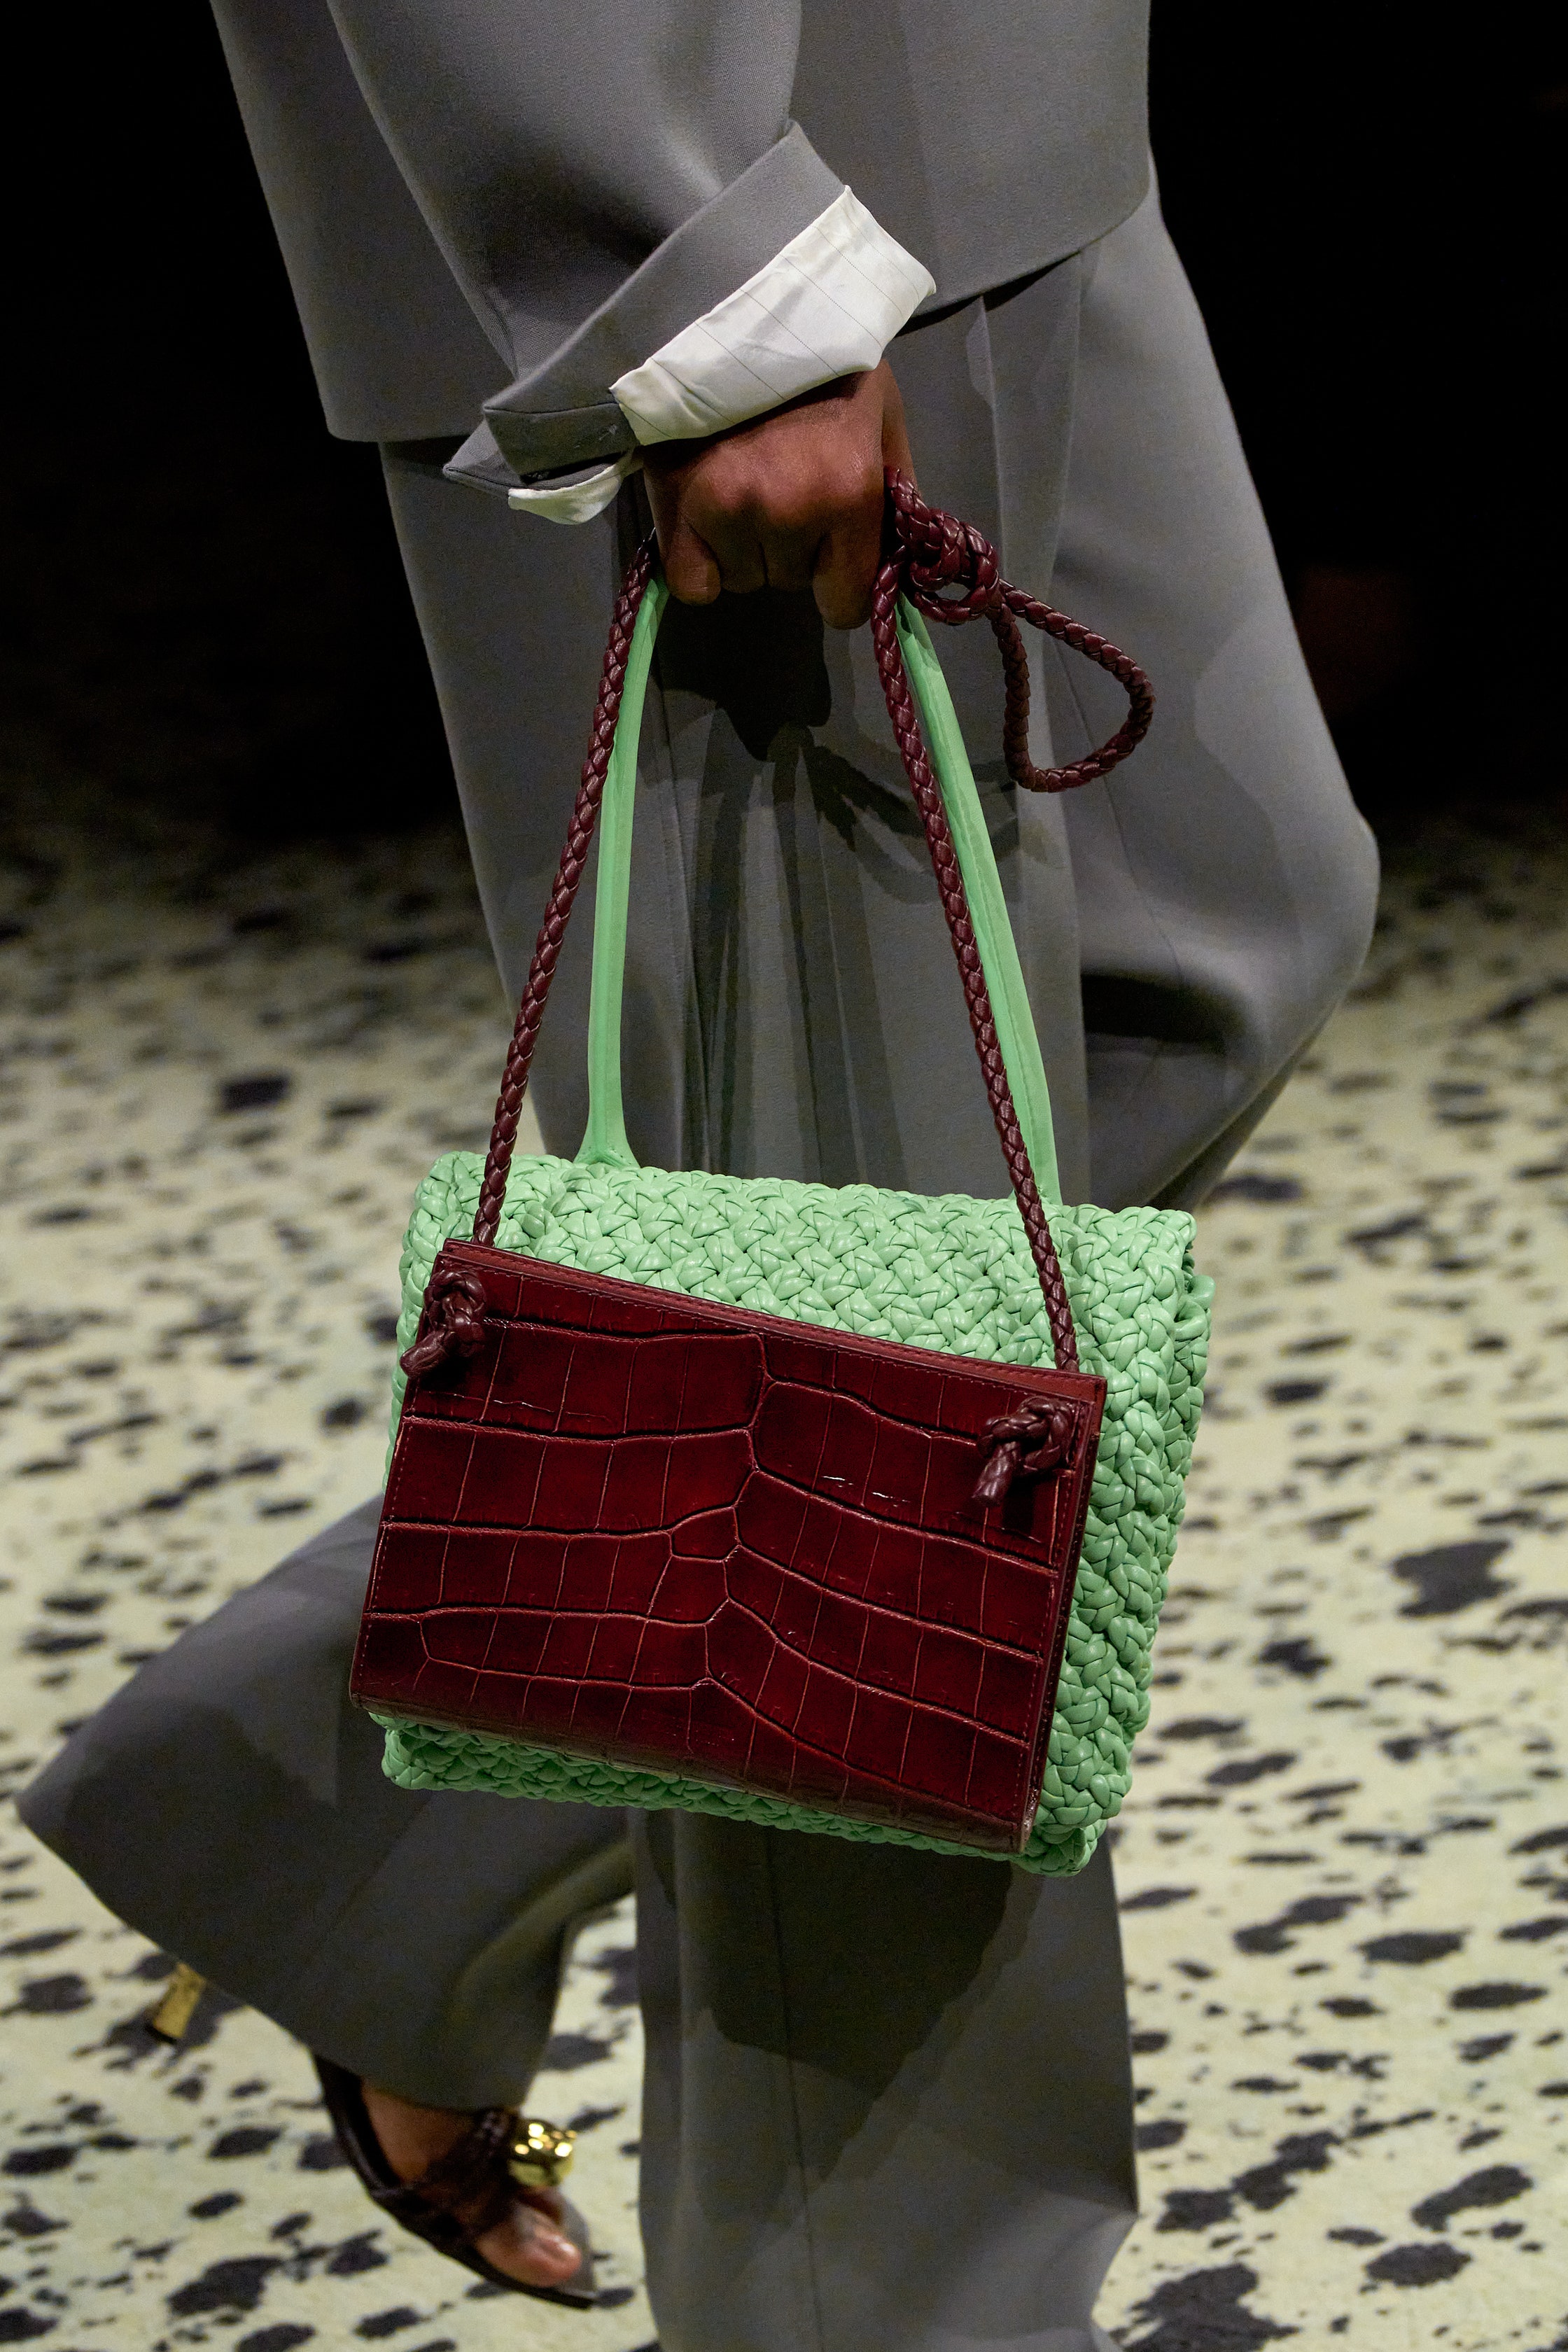 Balenciaga Fall / Winter 2014 Runway Bag collection featuring Croc